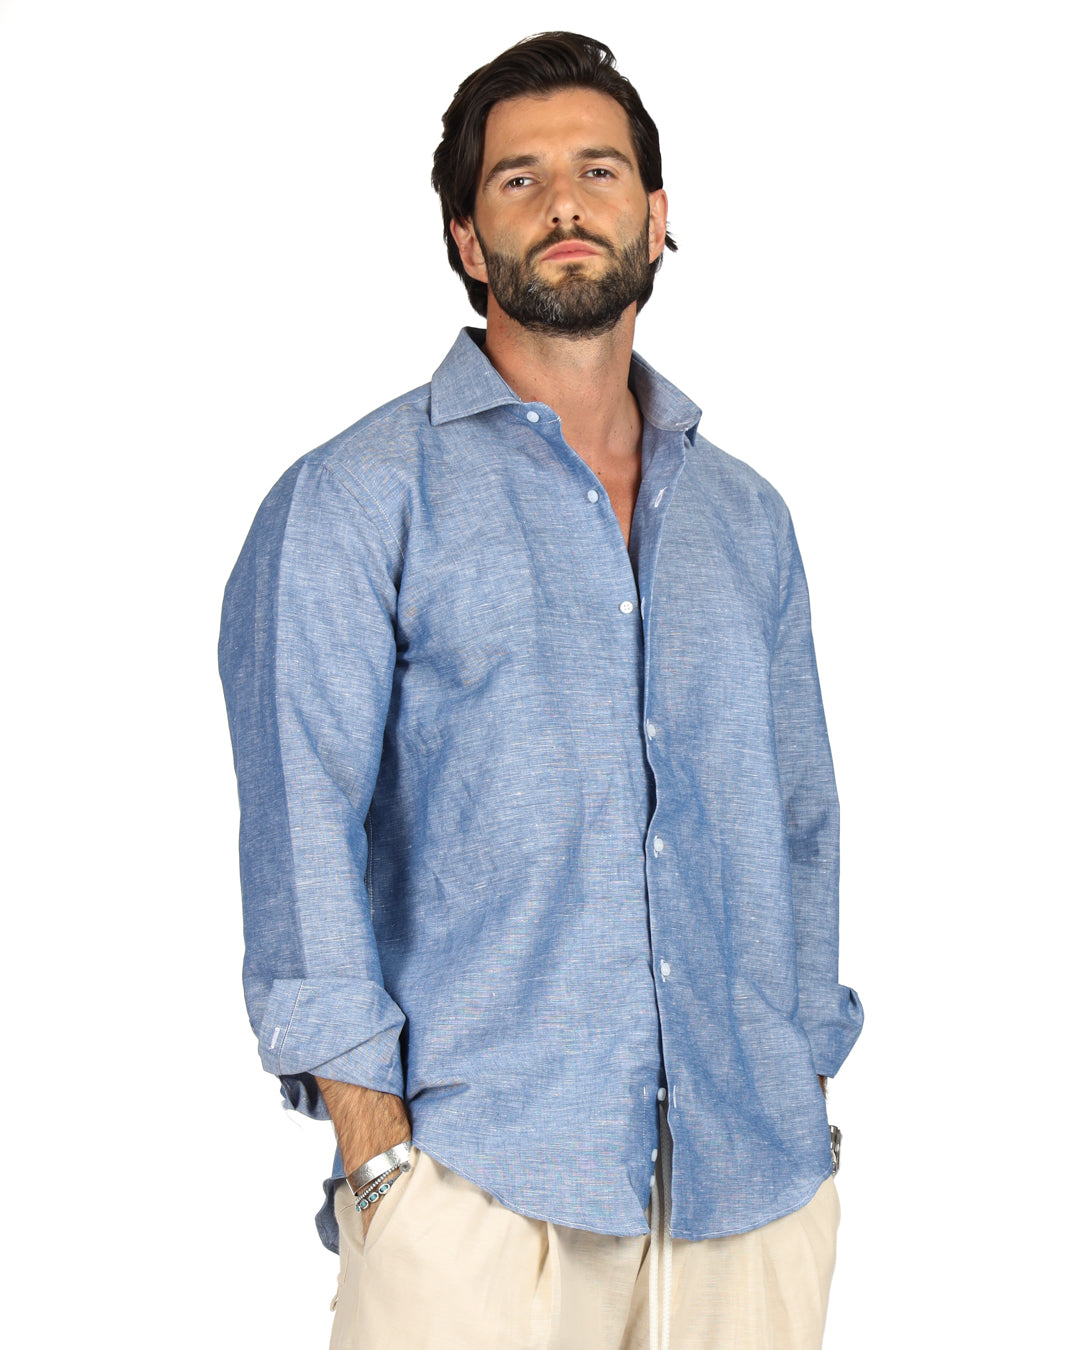 Praiano - La chemise en lin denim classique